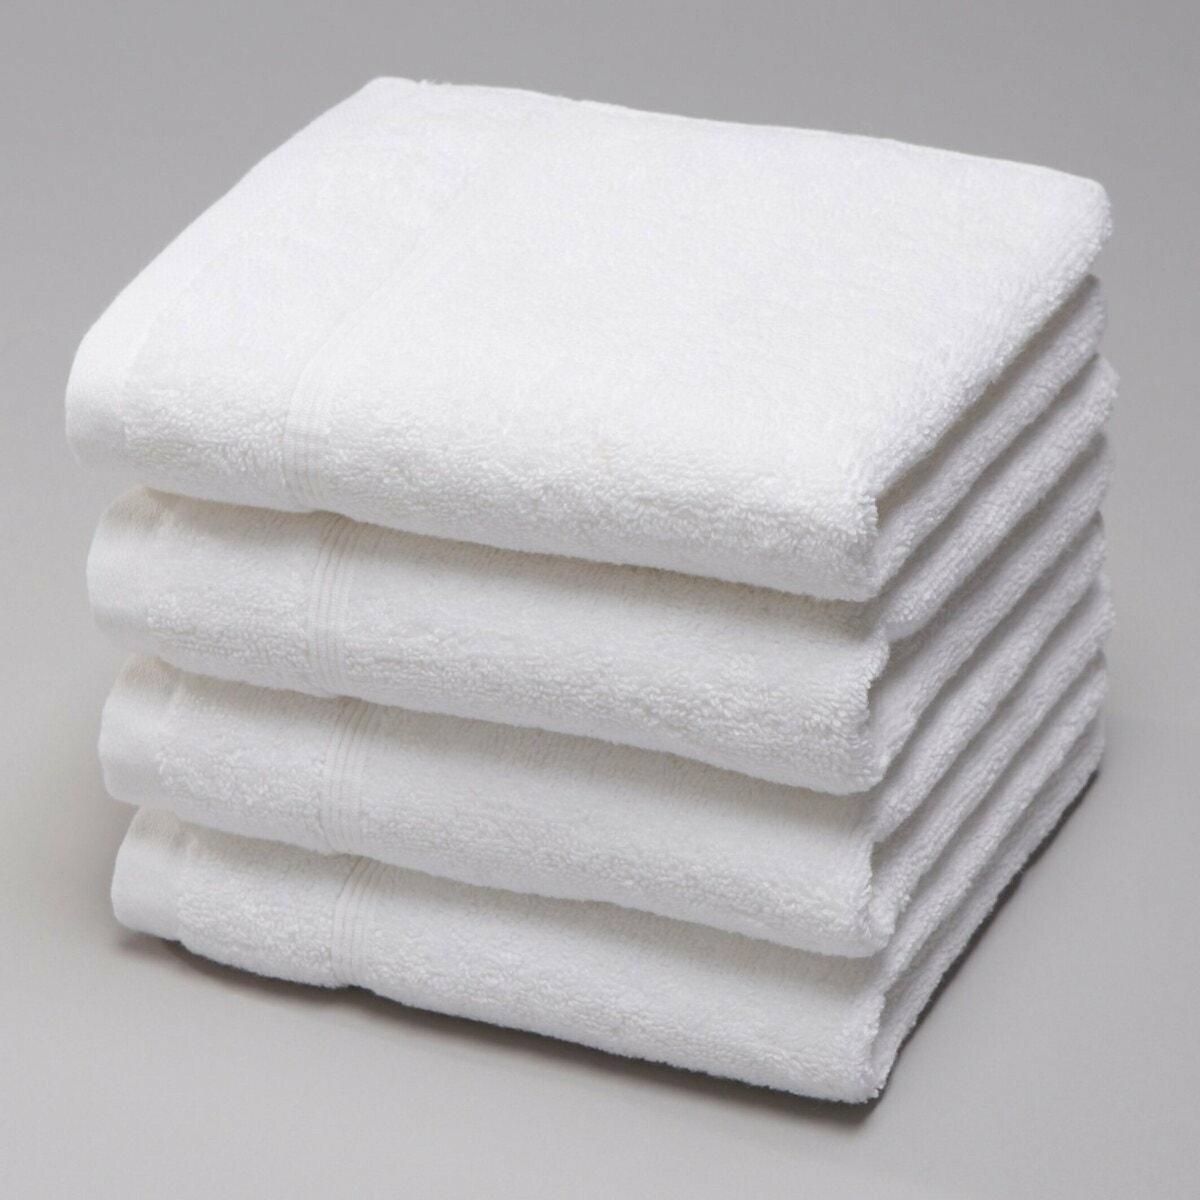 Σπίτι > Λευκά είδη > Μπάνιο > Πετσέτες προσώπου Σετ 4 πετσέτες χεριών 30x30 cm